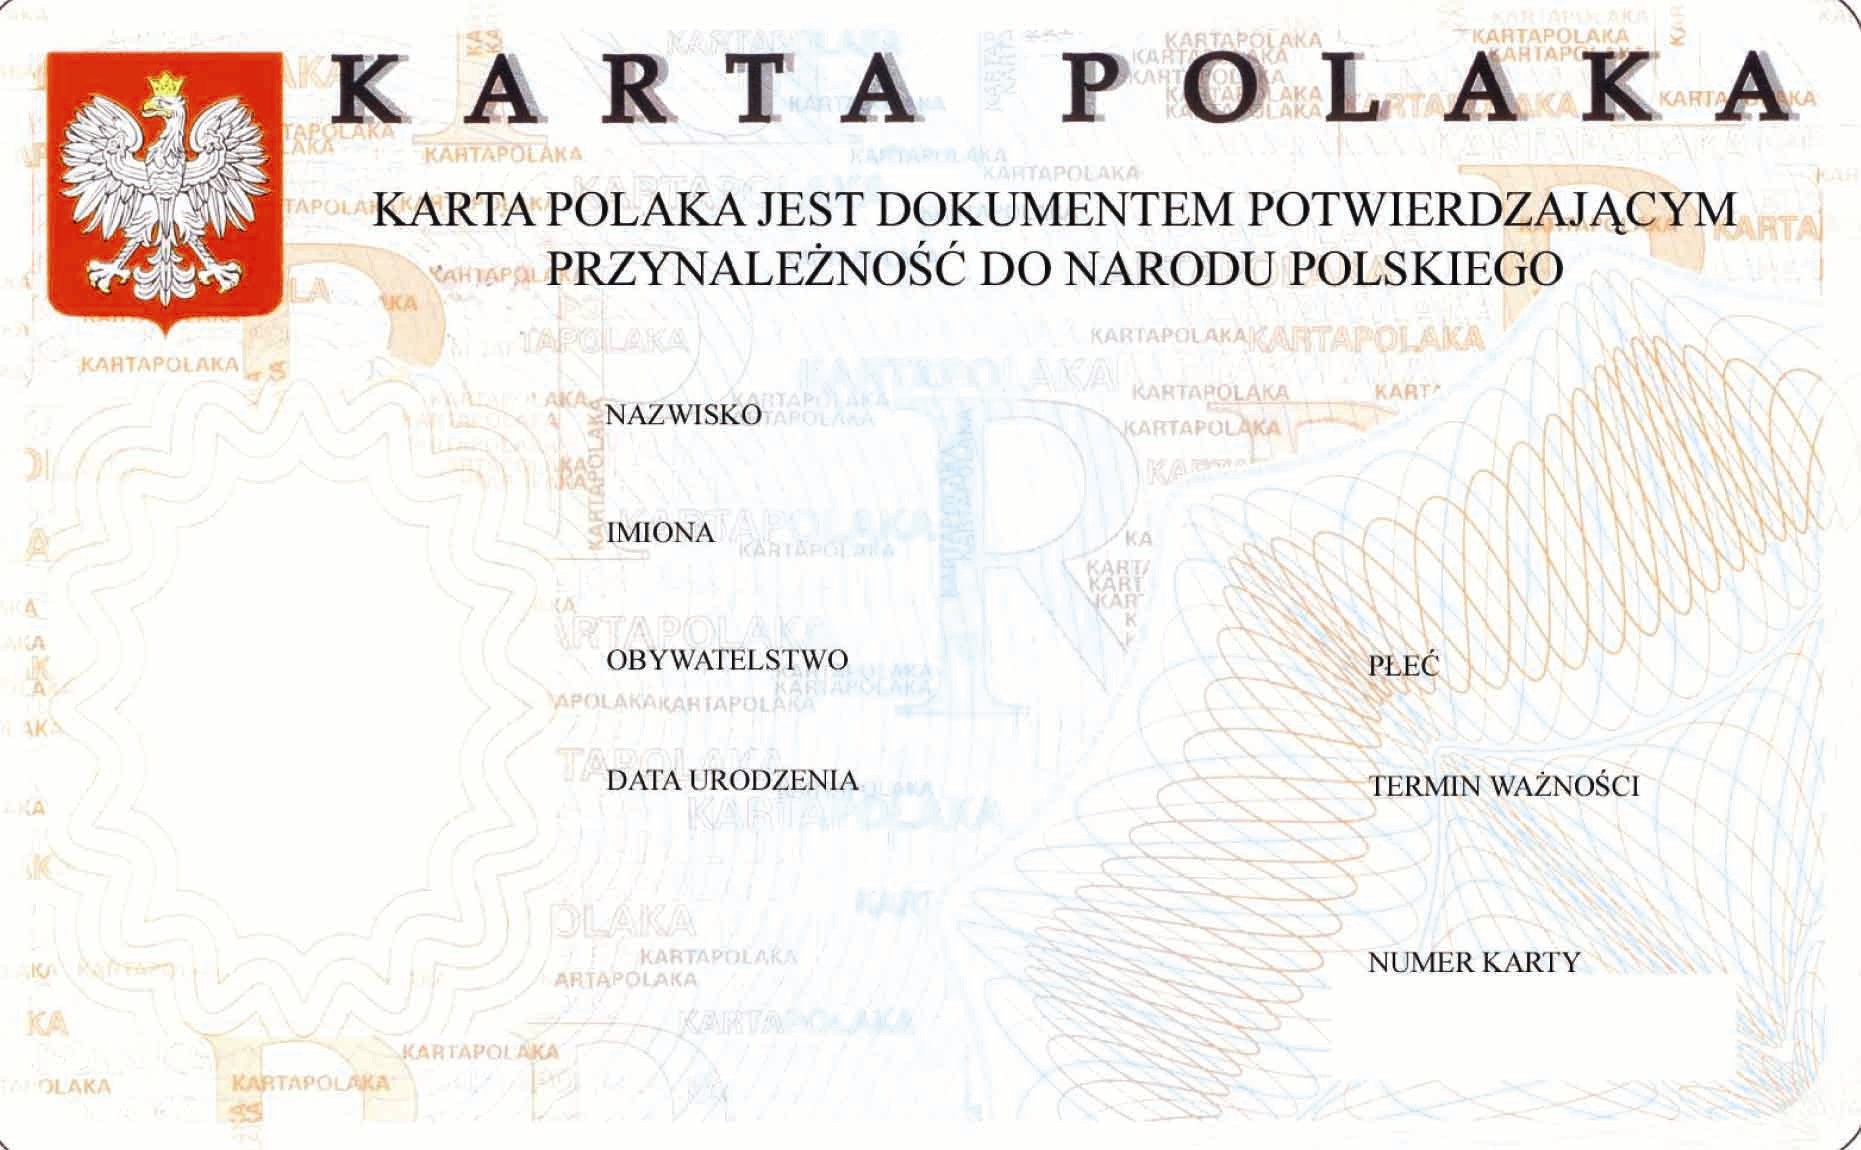 Карта поляка: что нужно знать и как оформить - polonista center
карта поляка: что нужно знать и как оформить - polonista center